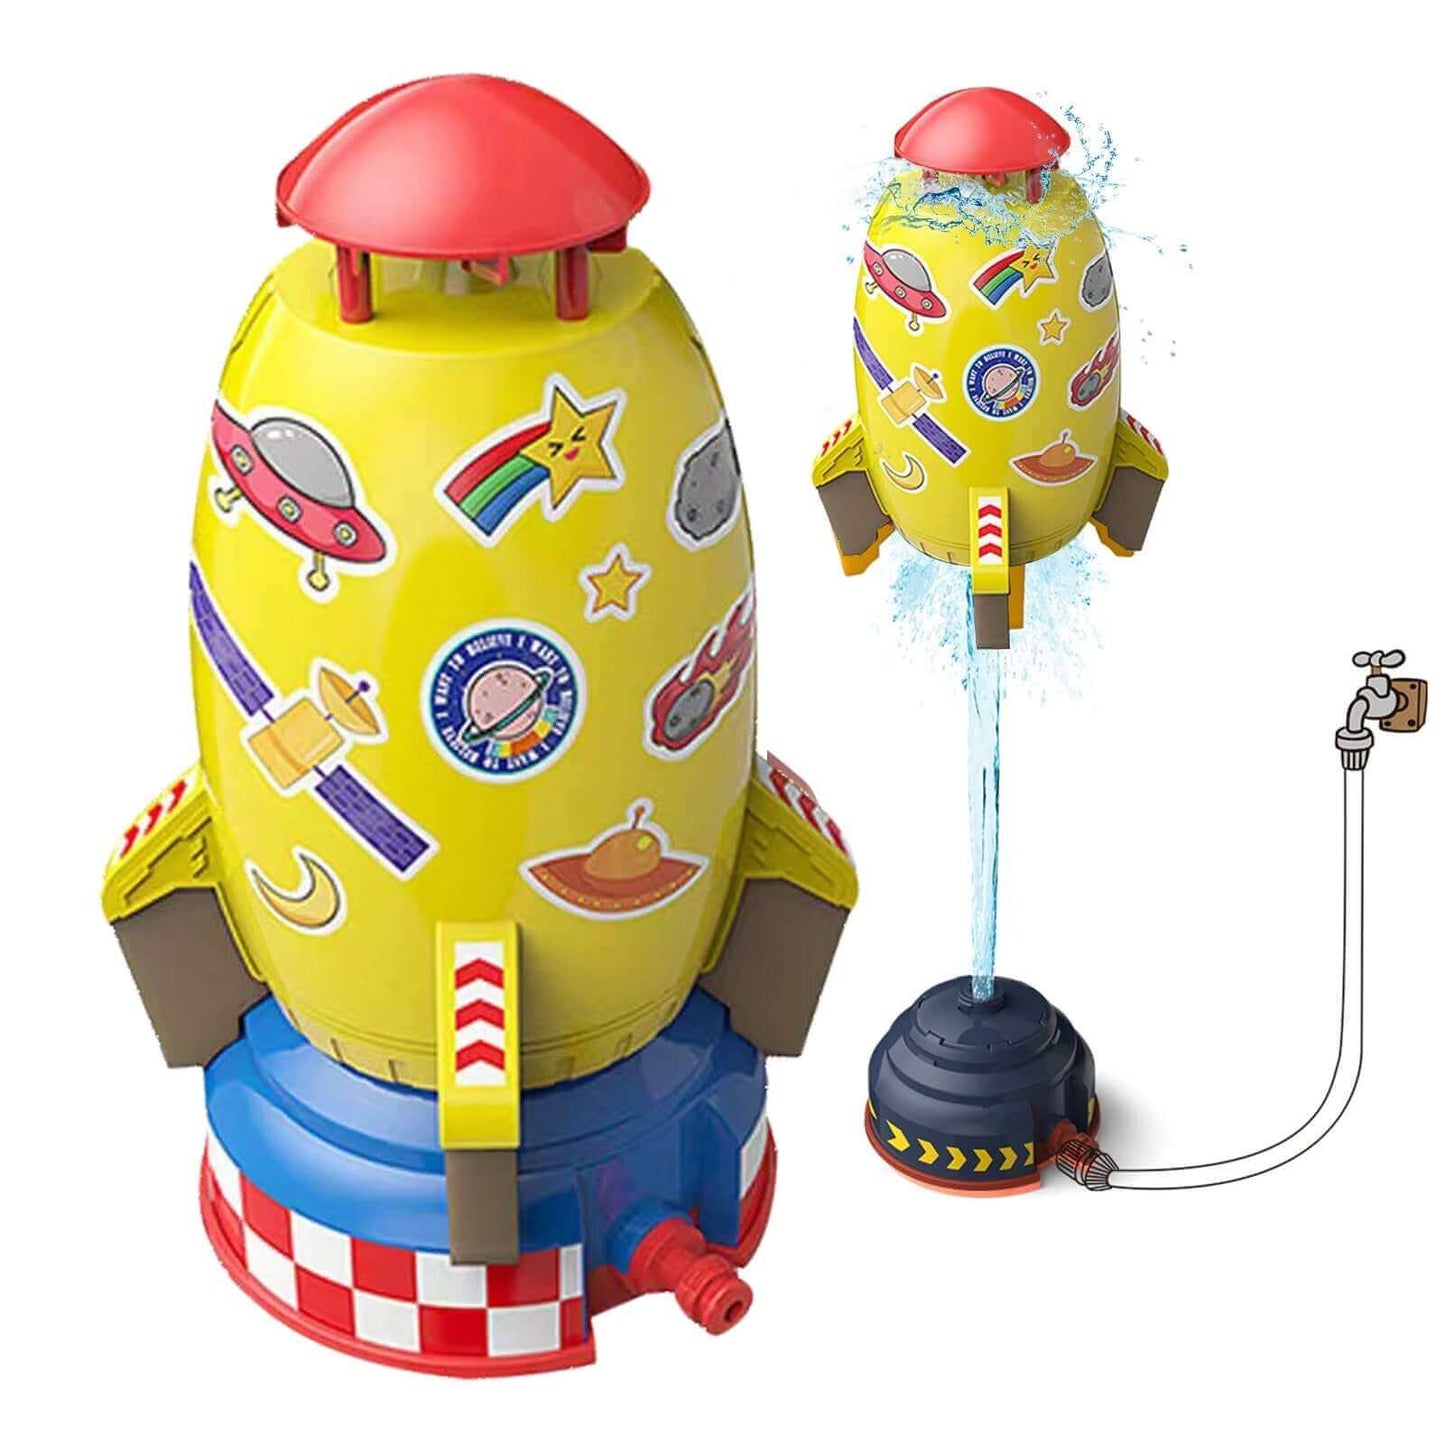 Outdoor-Raketenwerfer-Spielzeug-Wasser betriebener Sprinkler für Gartens paß &amp; interaktives Spielen-Rasen-Wassers prüh rakete für Kinder